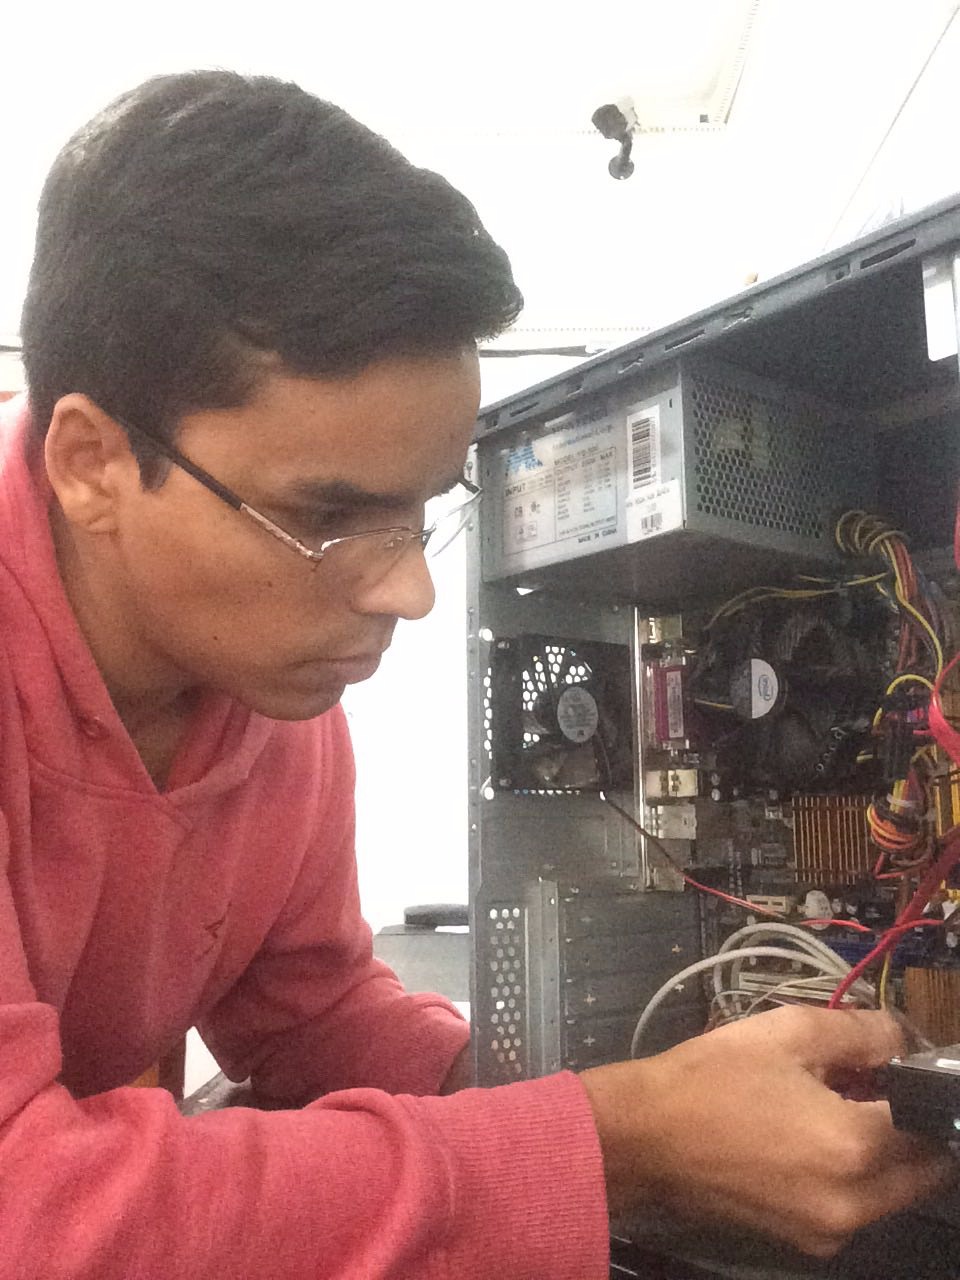 Luan trabalha há cinco anos como técnico em montagem e manutenção na área da informática / Foto: Moreira Produções